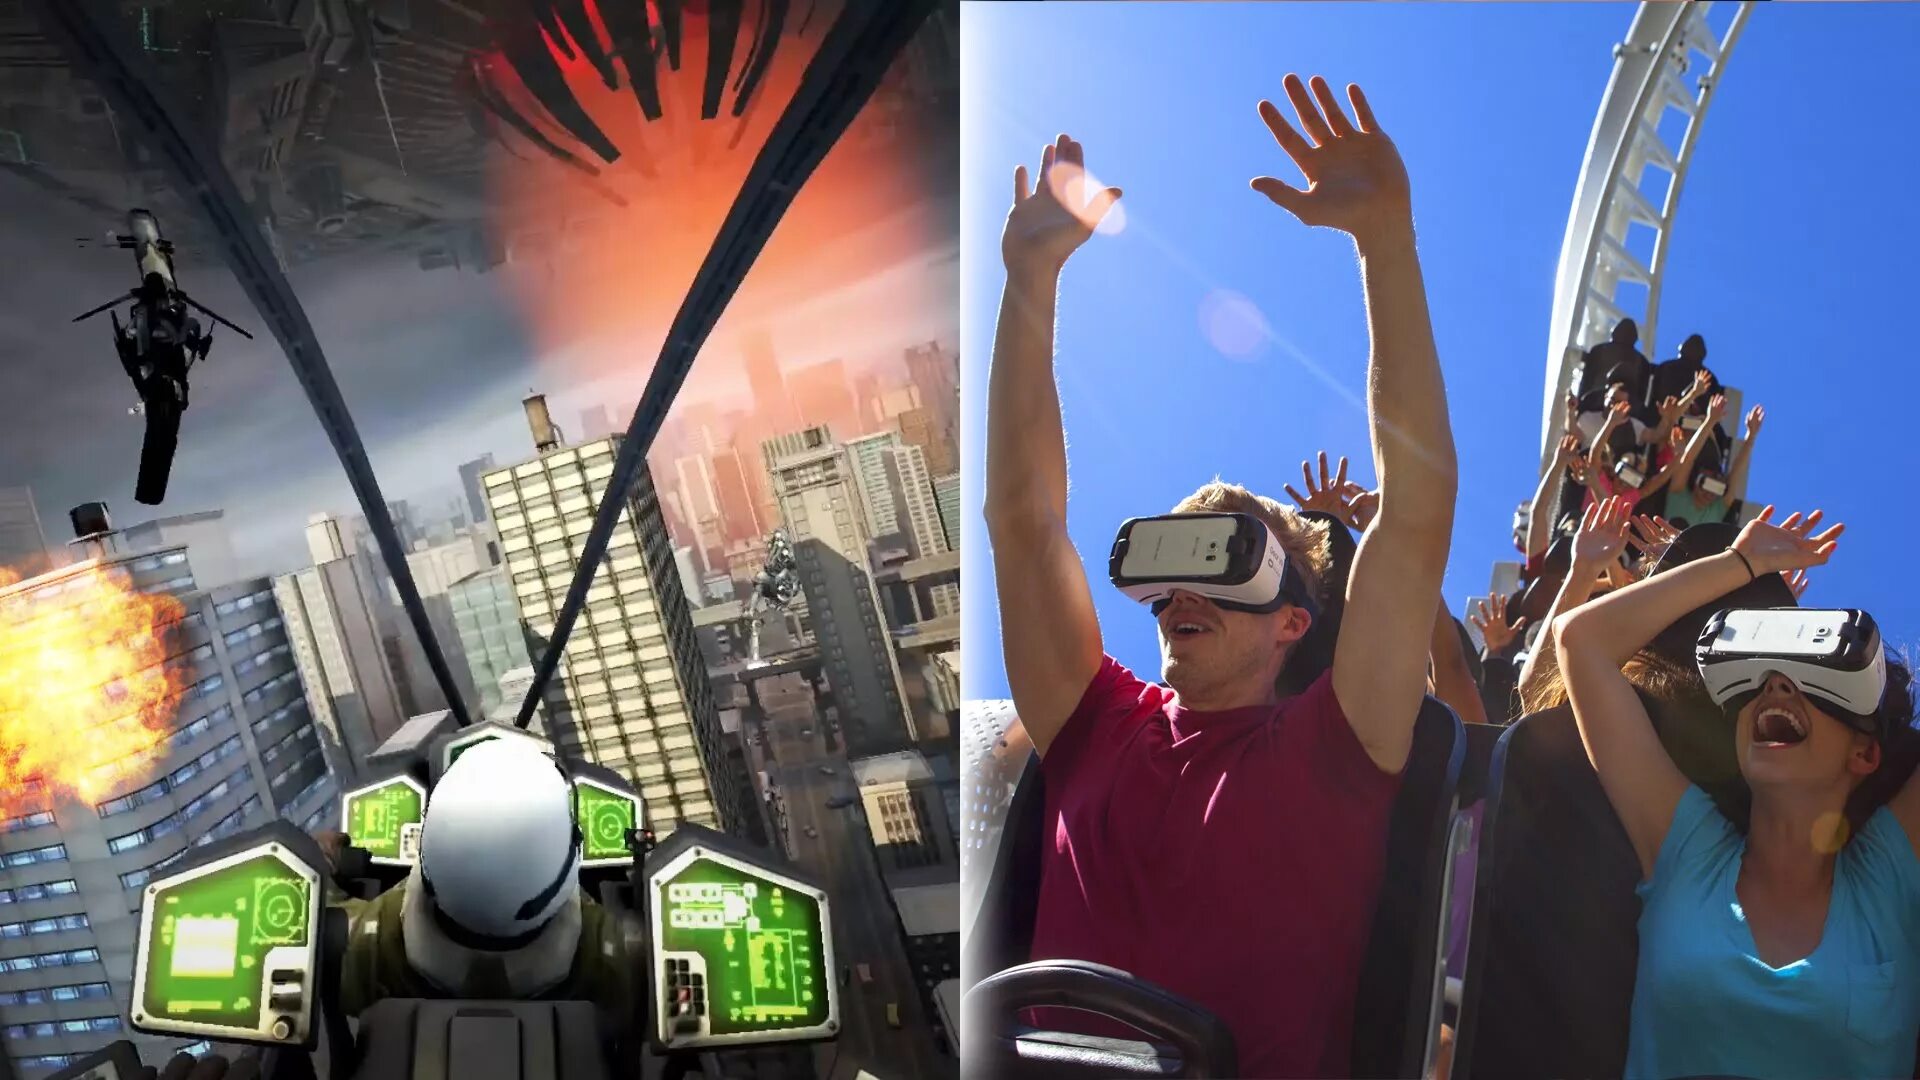 Виртуальная реальность развлечение. Виртуальная реальность американские горки. Очки виртуальной реальности американские горки. Аттракцион виртуальной реальности в очках. VR аттракцион американские горки.